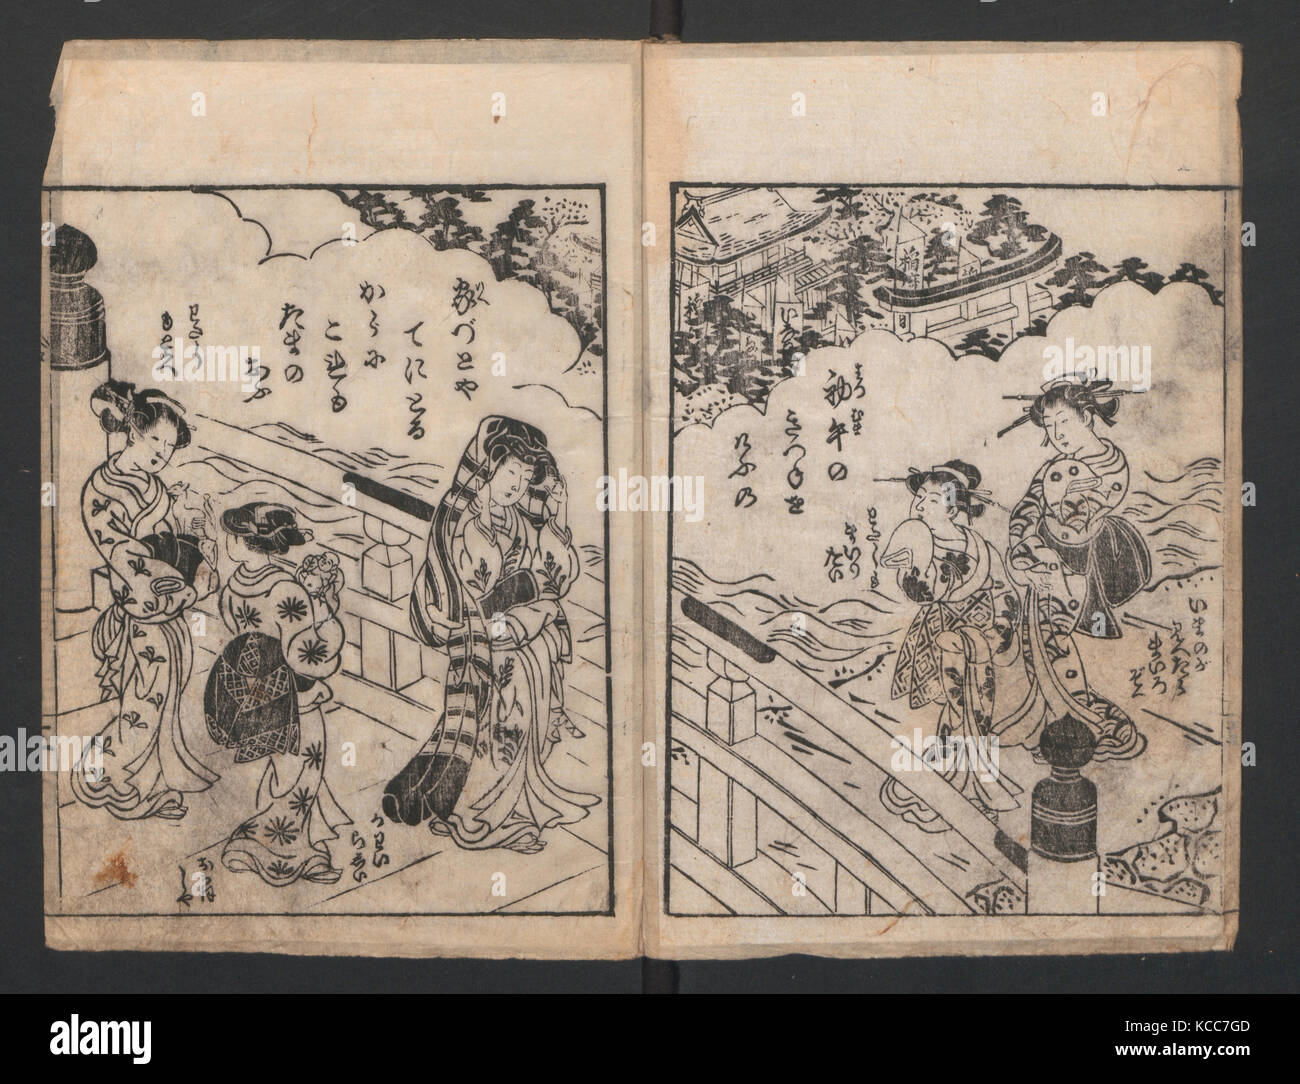 Le style de la mode de la femme, de la période Edo (1615-1868), Japon, illustrations en noir et blanc avec des légendes, encre sur papier, 8 x 3/4 Banque D'Images